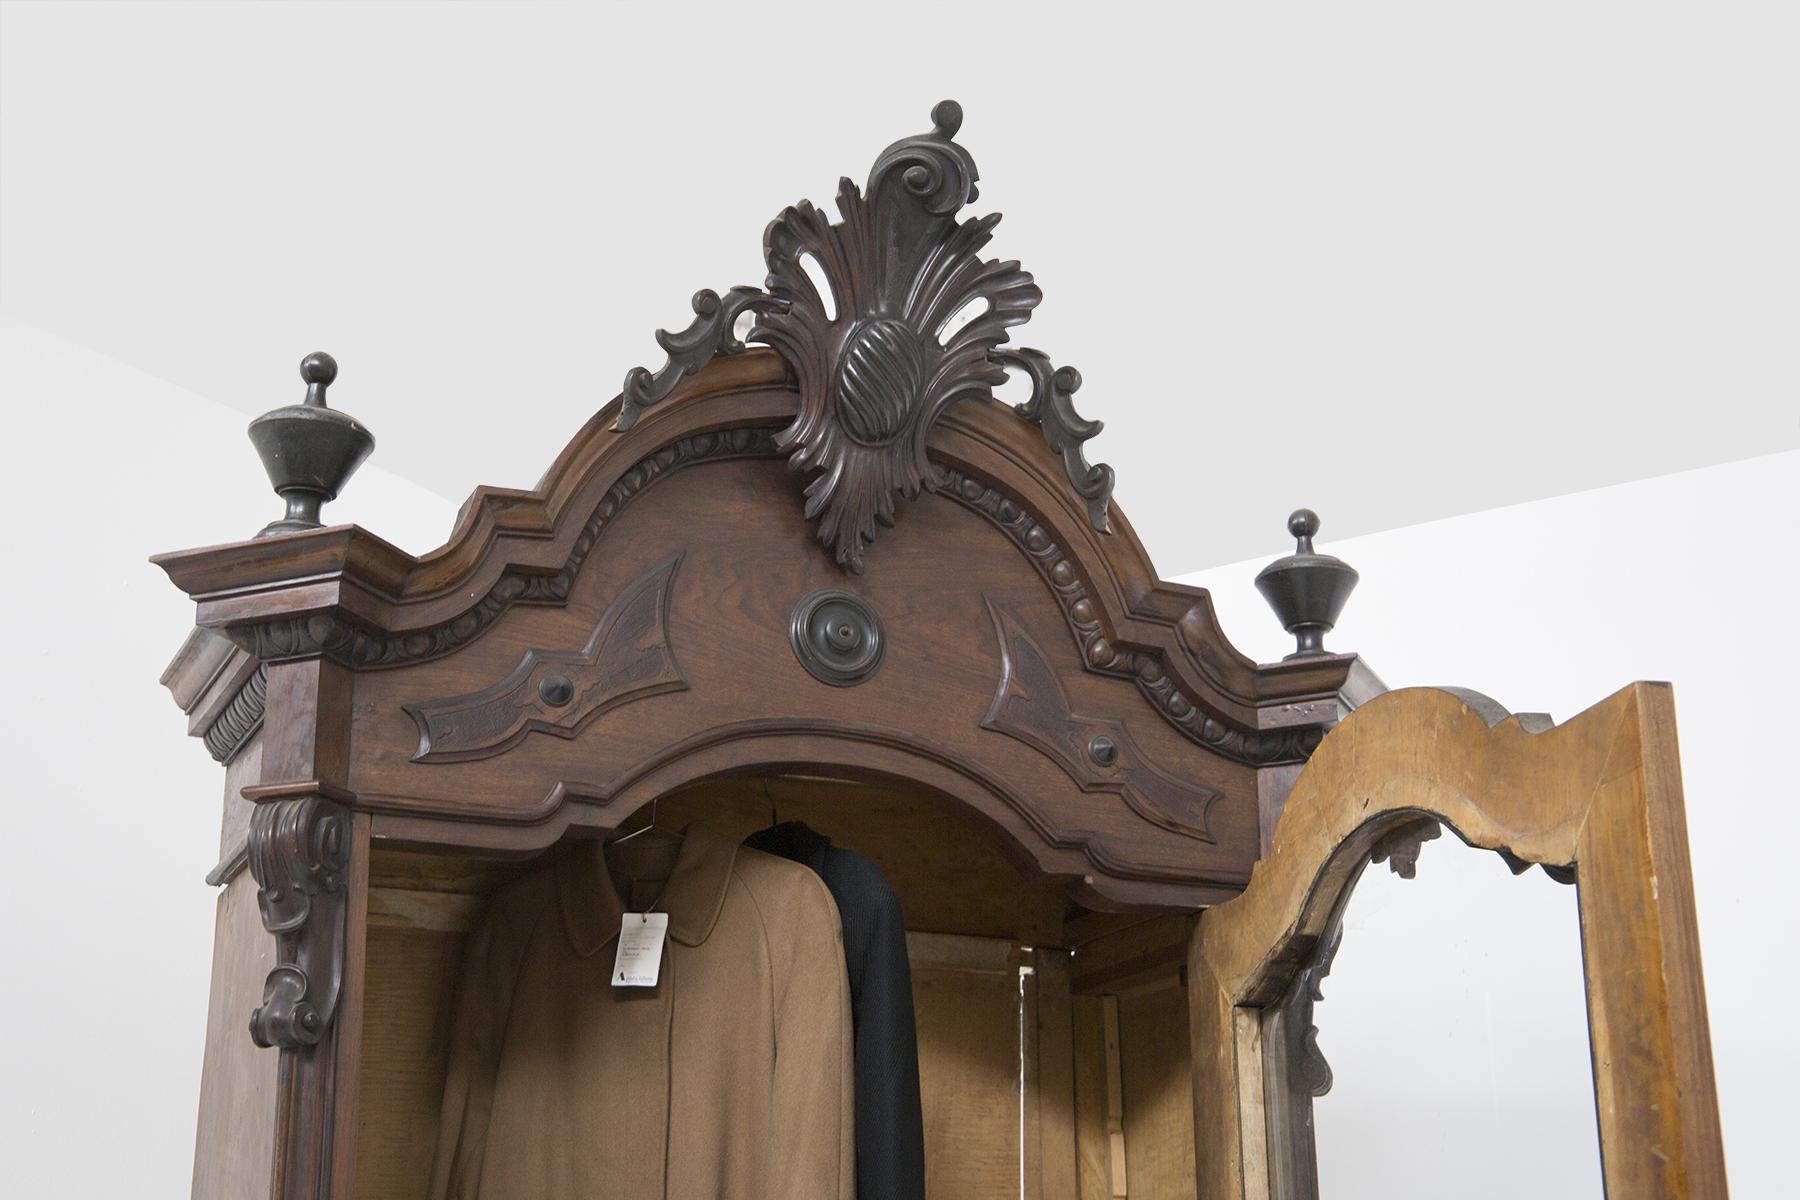 Sehr seltener antiker Schrank aus der Rokokozeit um 1700, aus Nussbaumholz mit Messingdetails, sehr elegant, feine italienische Fertigung.
Der antike Schrank ist komplett aus feinstem Walnussholz gefertigt.
Der Sockel wird von 4 quadratischen